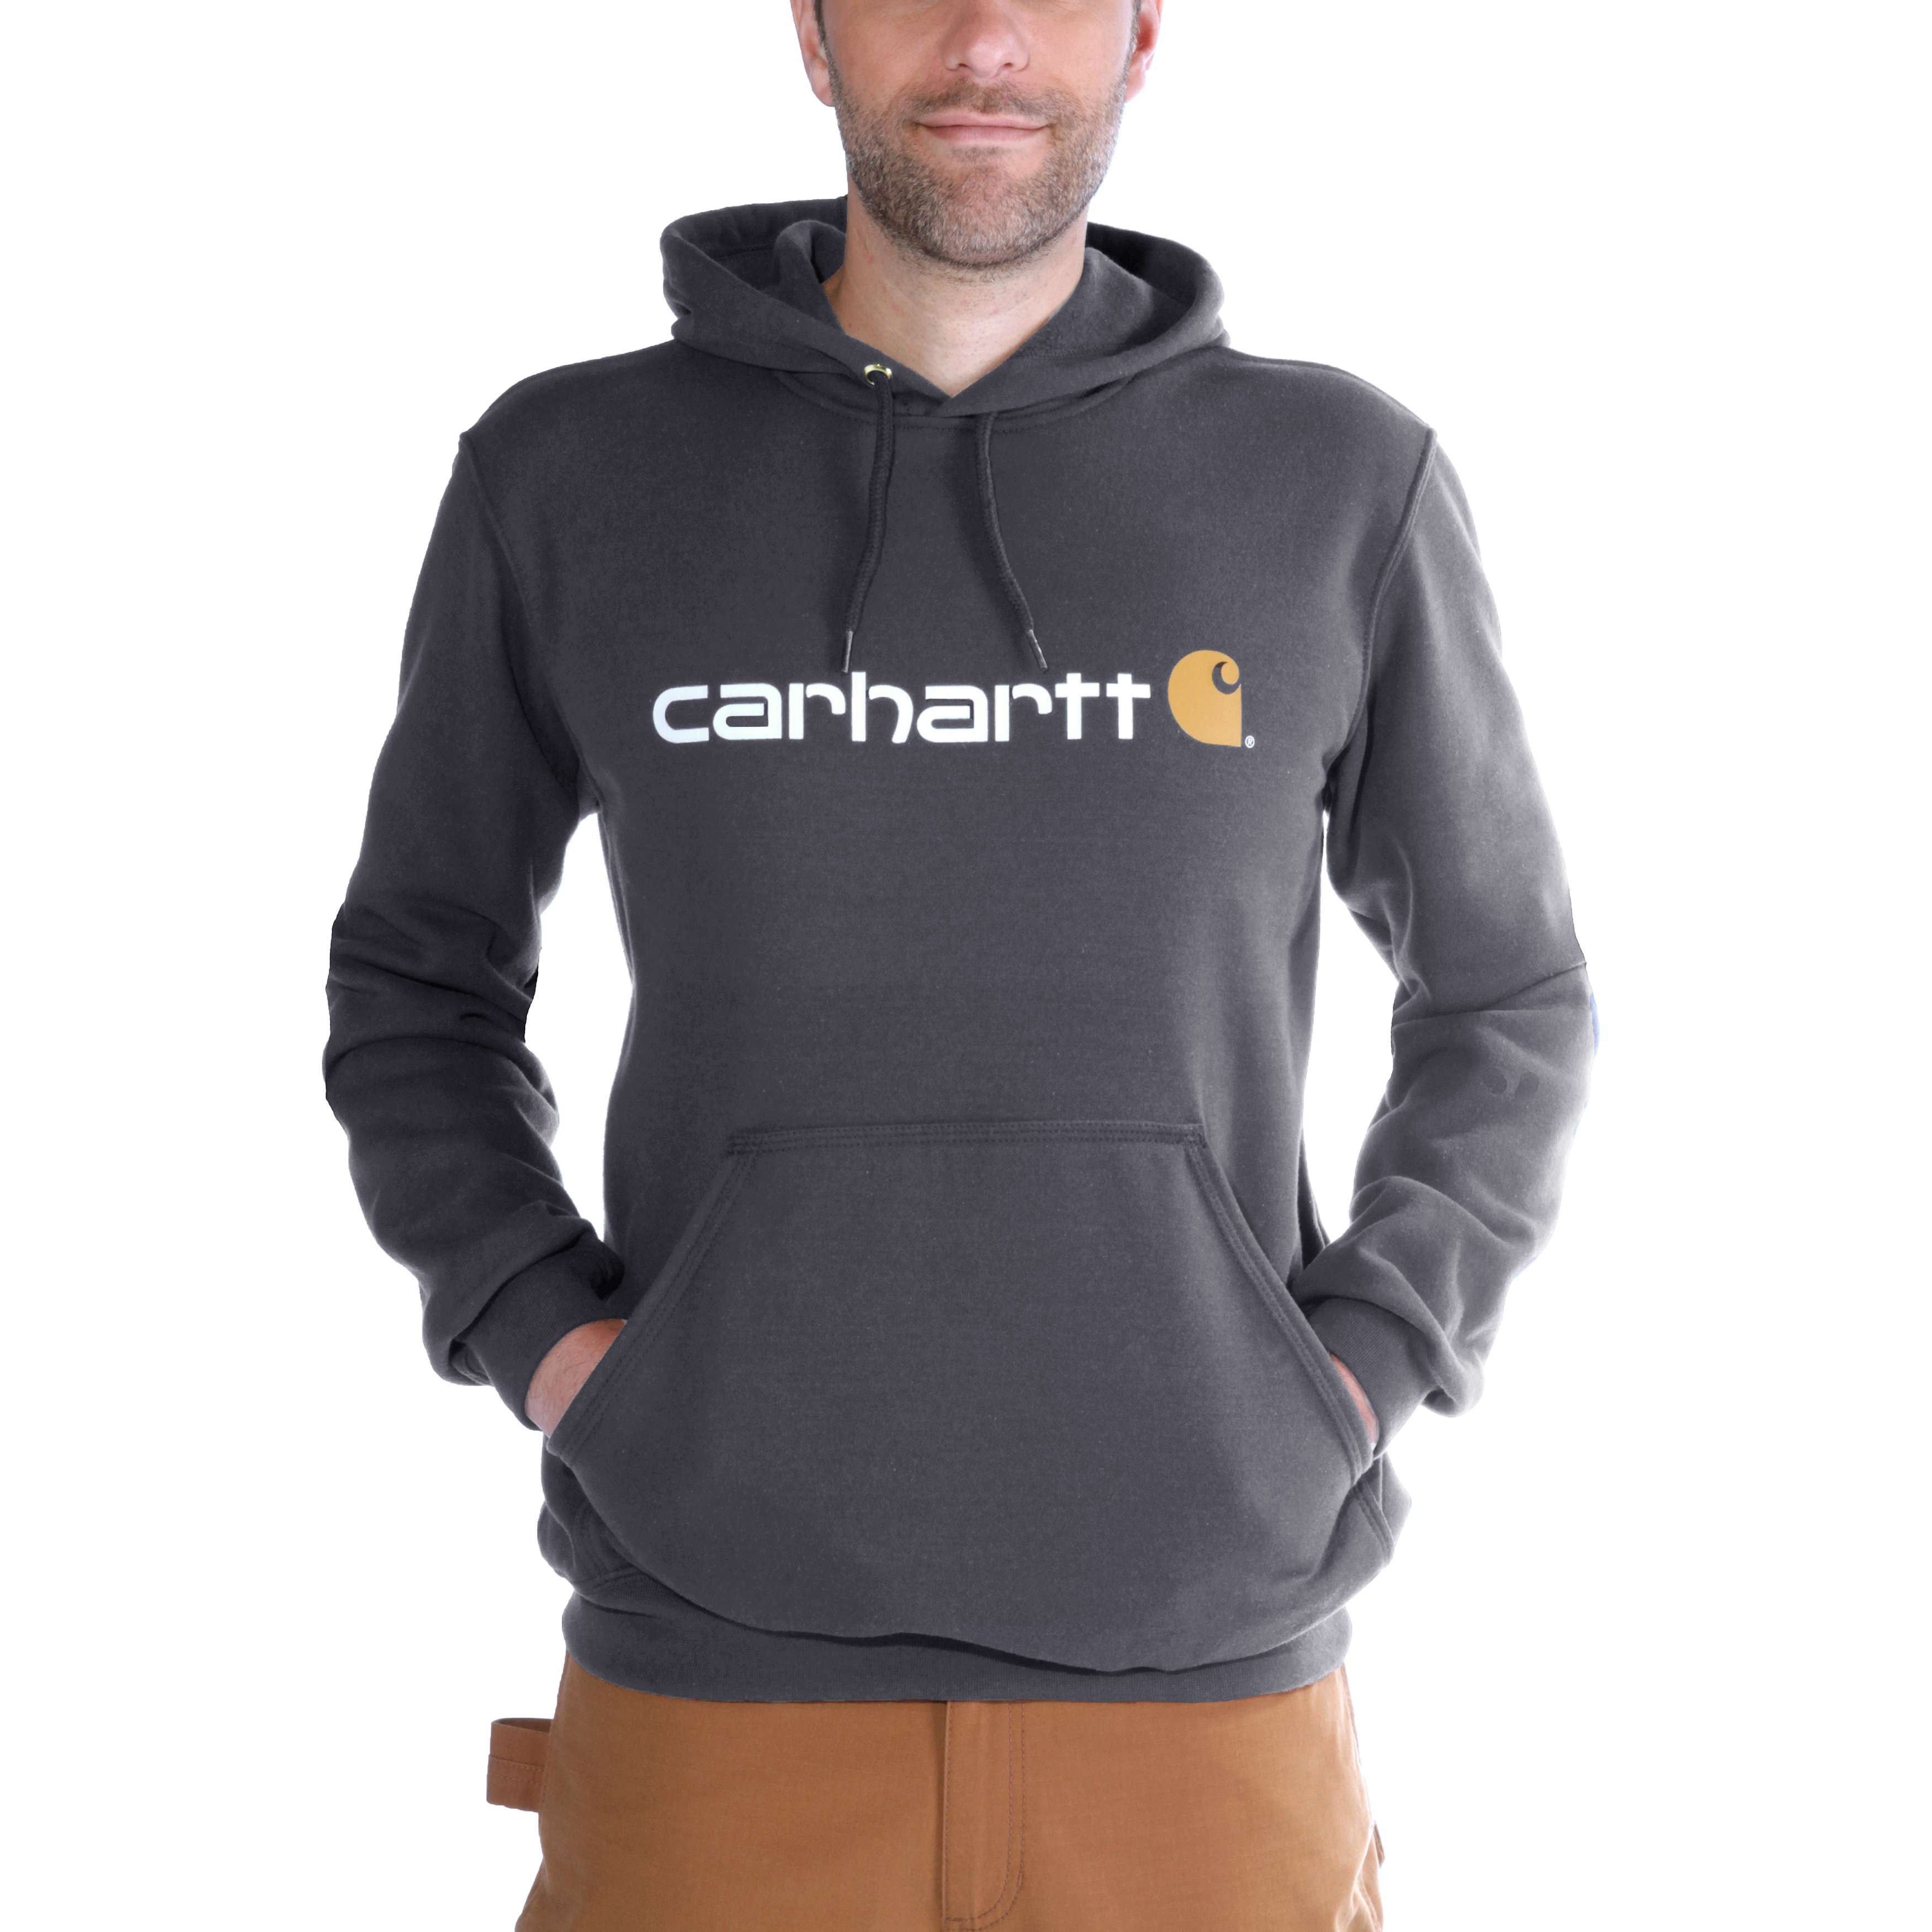 Carhartt Hoodies - Loose fit herensweater met capuchon en carhartt-logo Grijs - S